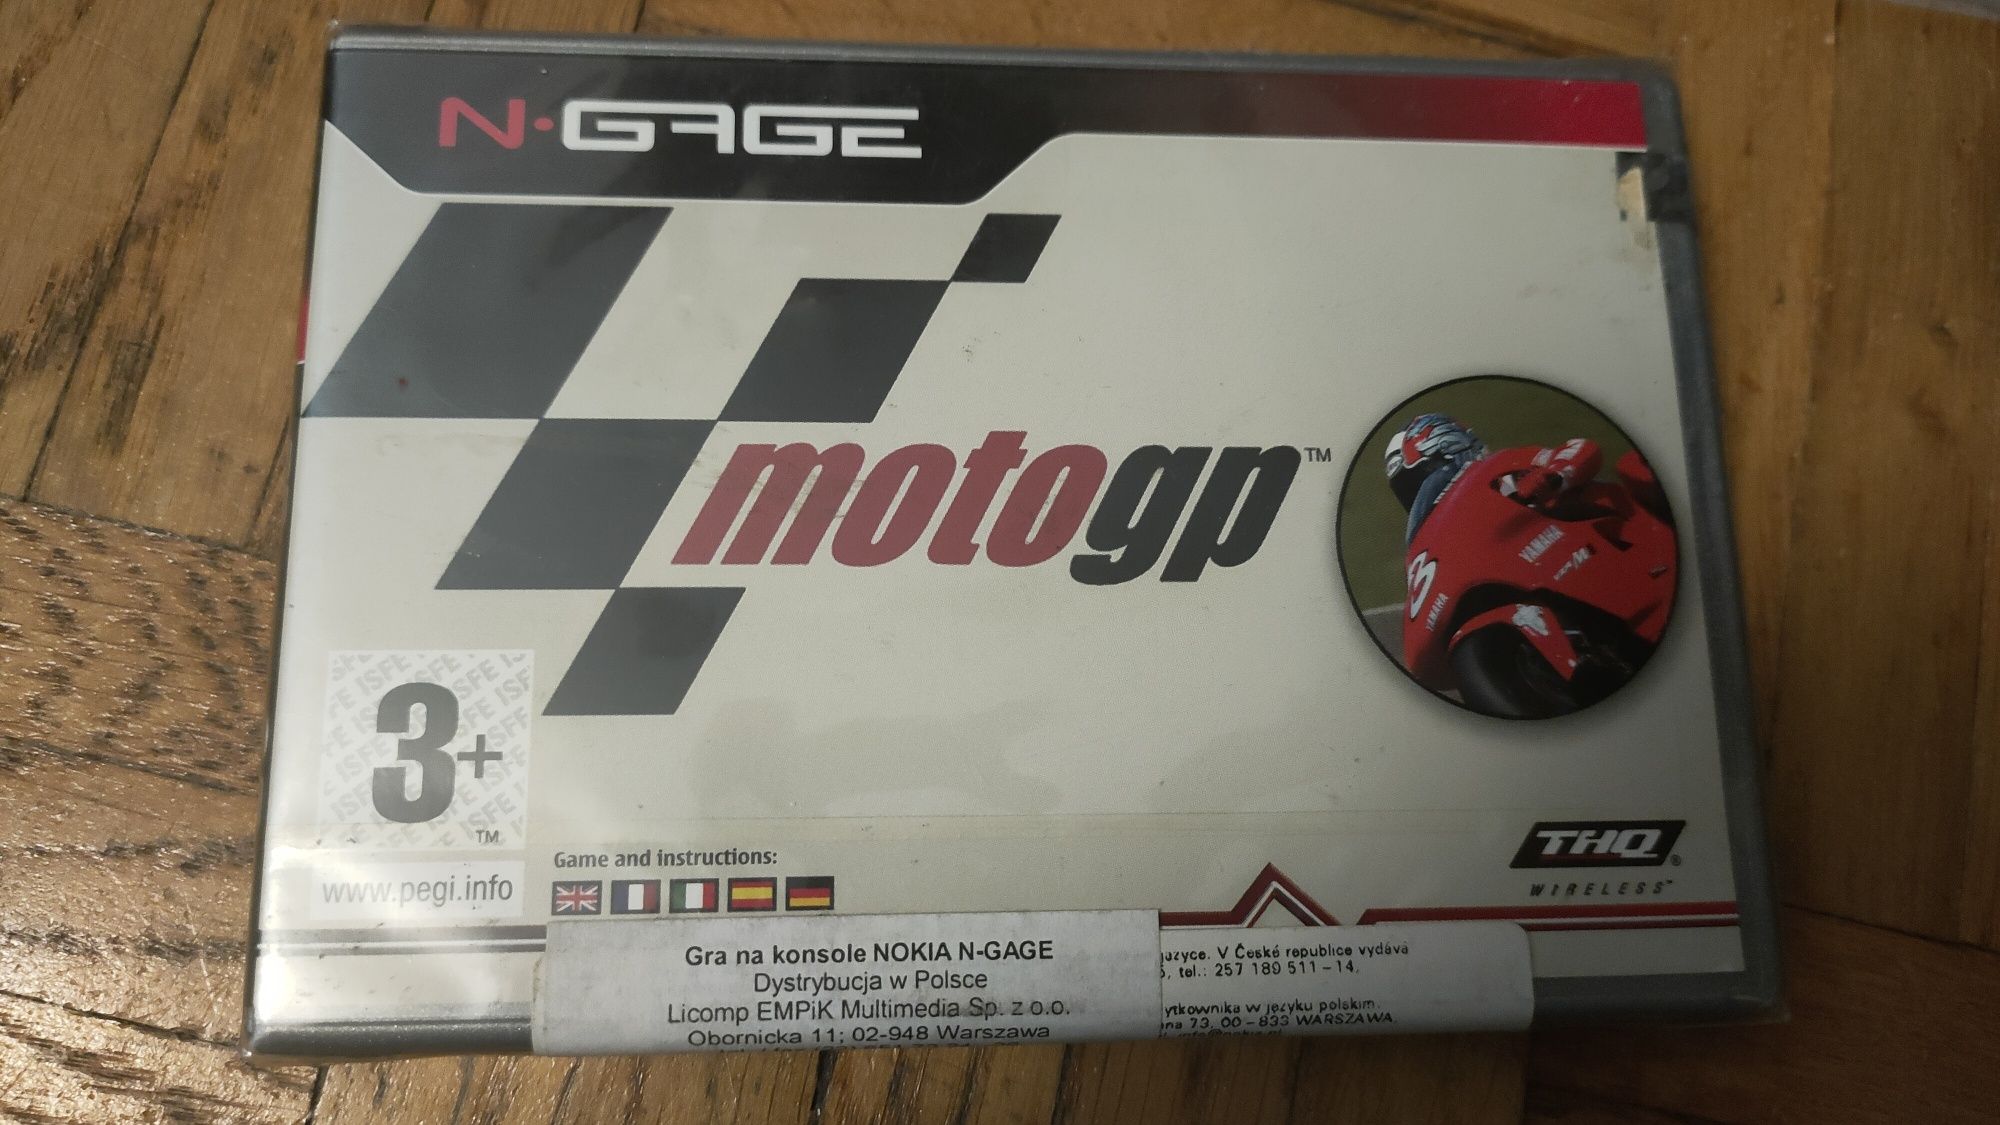 Gra MotoGP Nokia N Gage (NOWA) NGage Moto GP